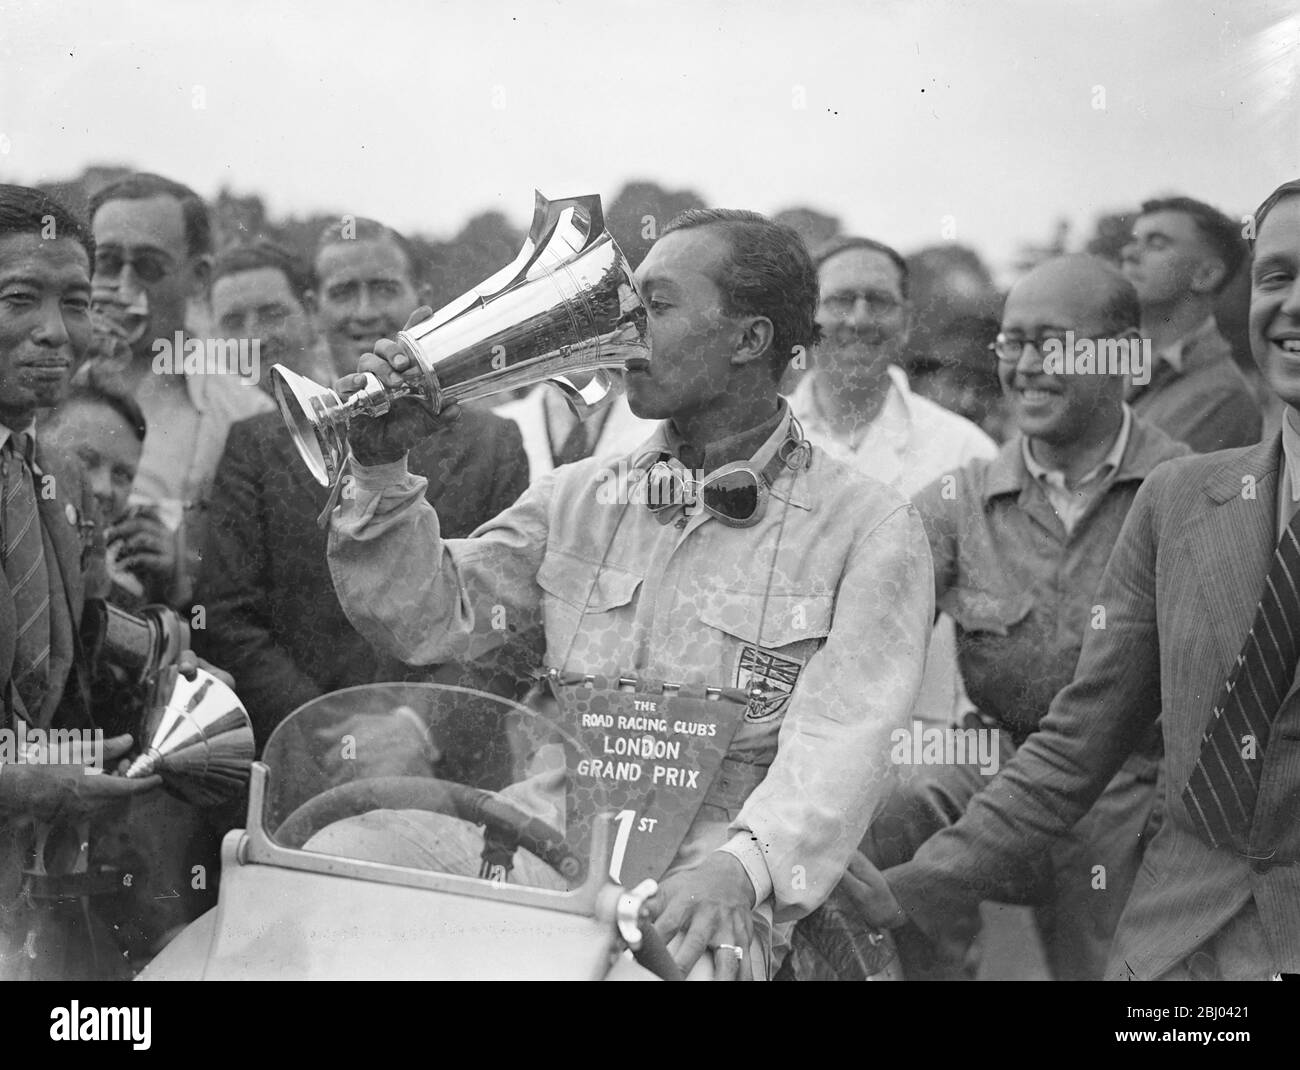 El príncipe Birabongse de Siam [el príncipe Bira de Siam / Tailandia], que conduce UNA ERA [automóviles de carreras Inglés] ganó el primer Gran Premio de Londres en el nuevo circuito de carreras de Crystal Palace. I. F. Cornell (ERA) fue segundo y P. Maclure (Riley) tercero. El príncipe Birabongse bebiendo de la Copa después de su victoria. - 17 de julio de 1937 Foto de stock